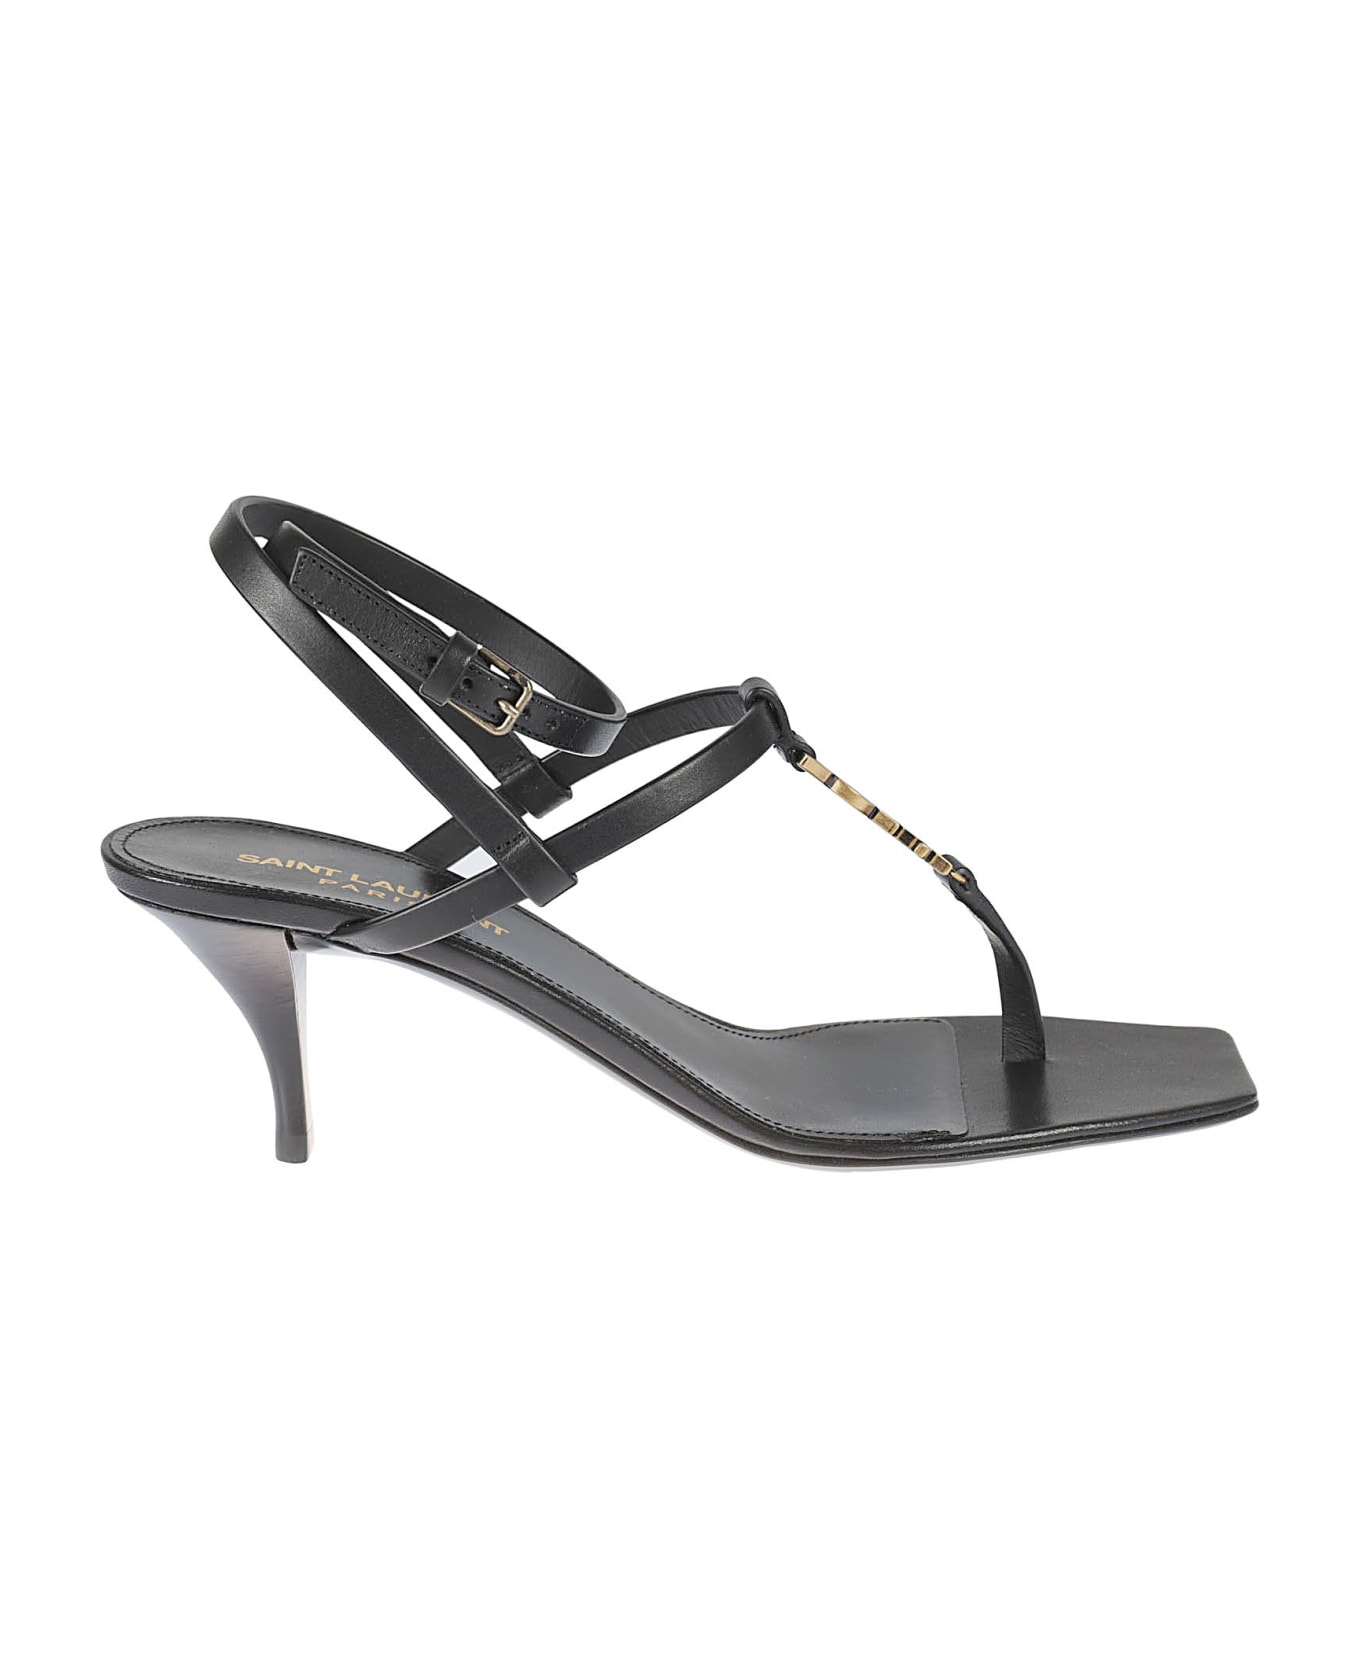 Saint Laurent Ankle Strap Sandals - Black